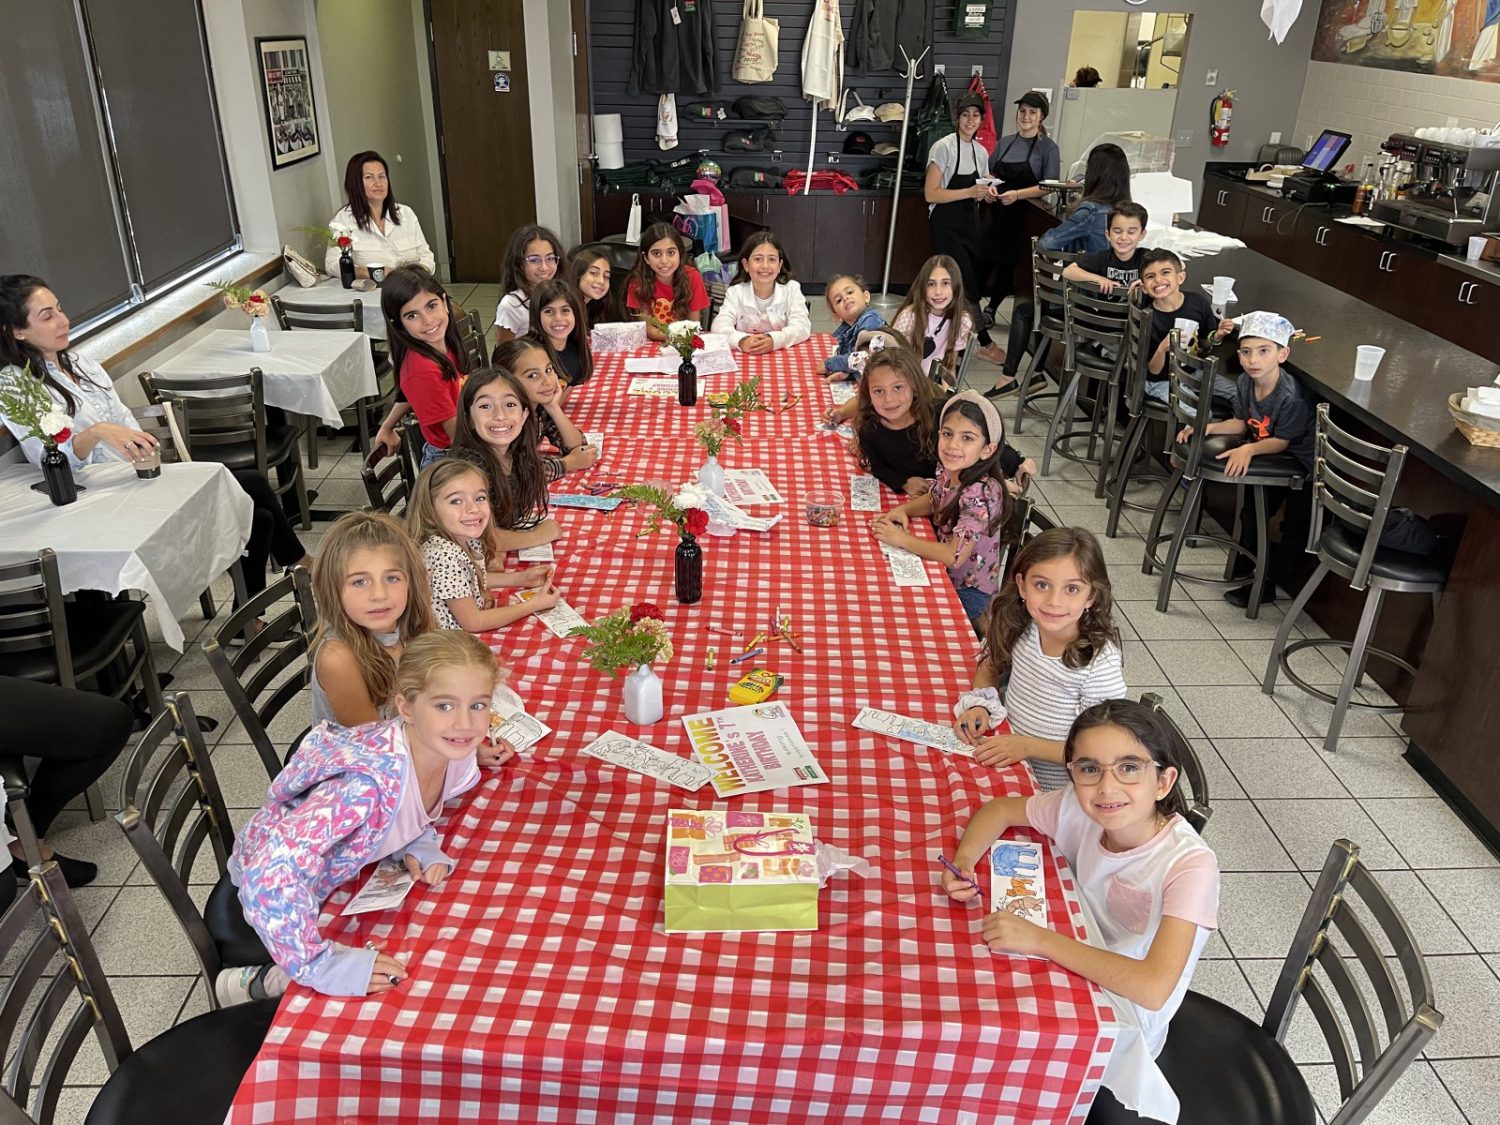 The Kids Bakery Experience – Livonia Italian Bakery and Cafe